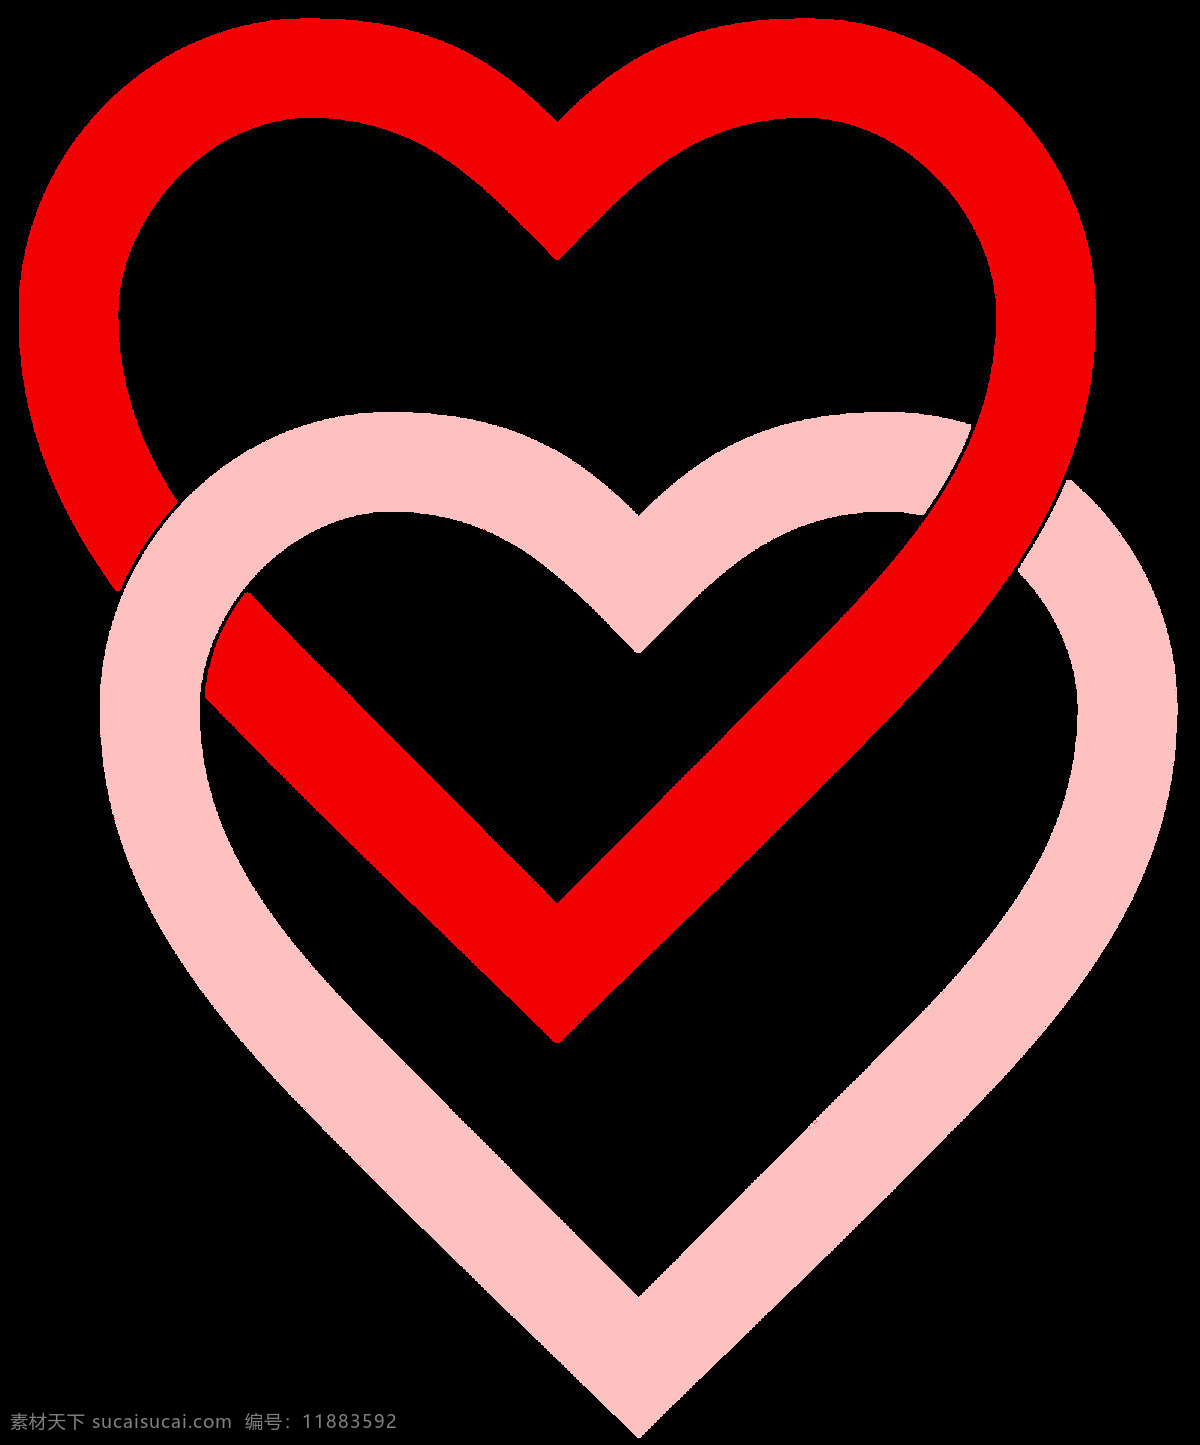 心连心 love 爱心 标志图标 情人节 心 设计素材 模板下载 红粉 其他图标 节日素材 情人节七夕